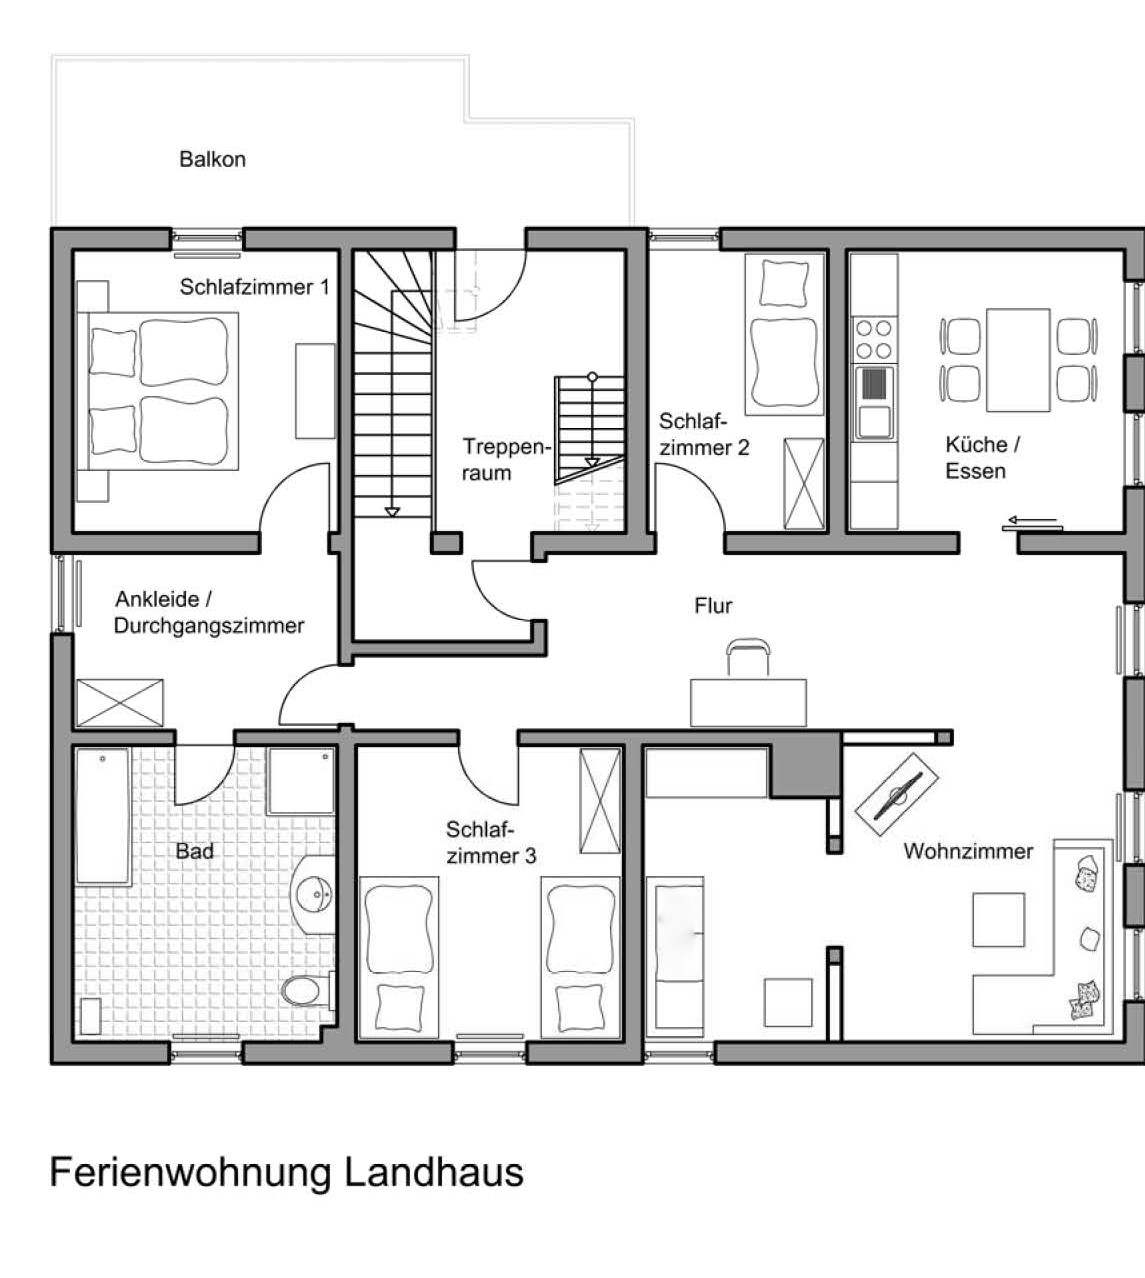 FeWo Landhaus